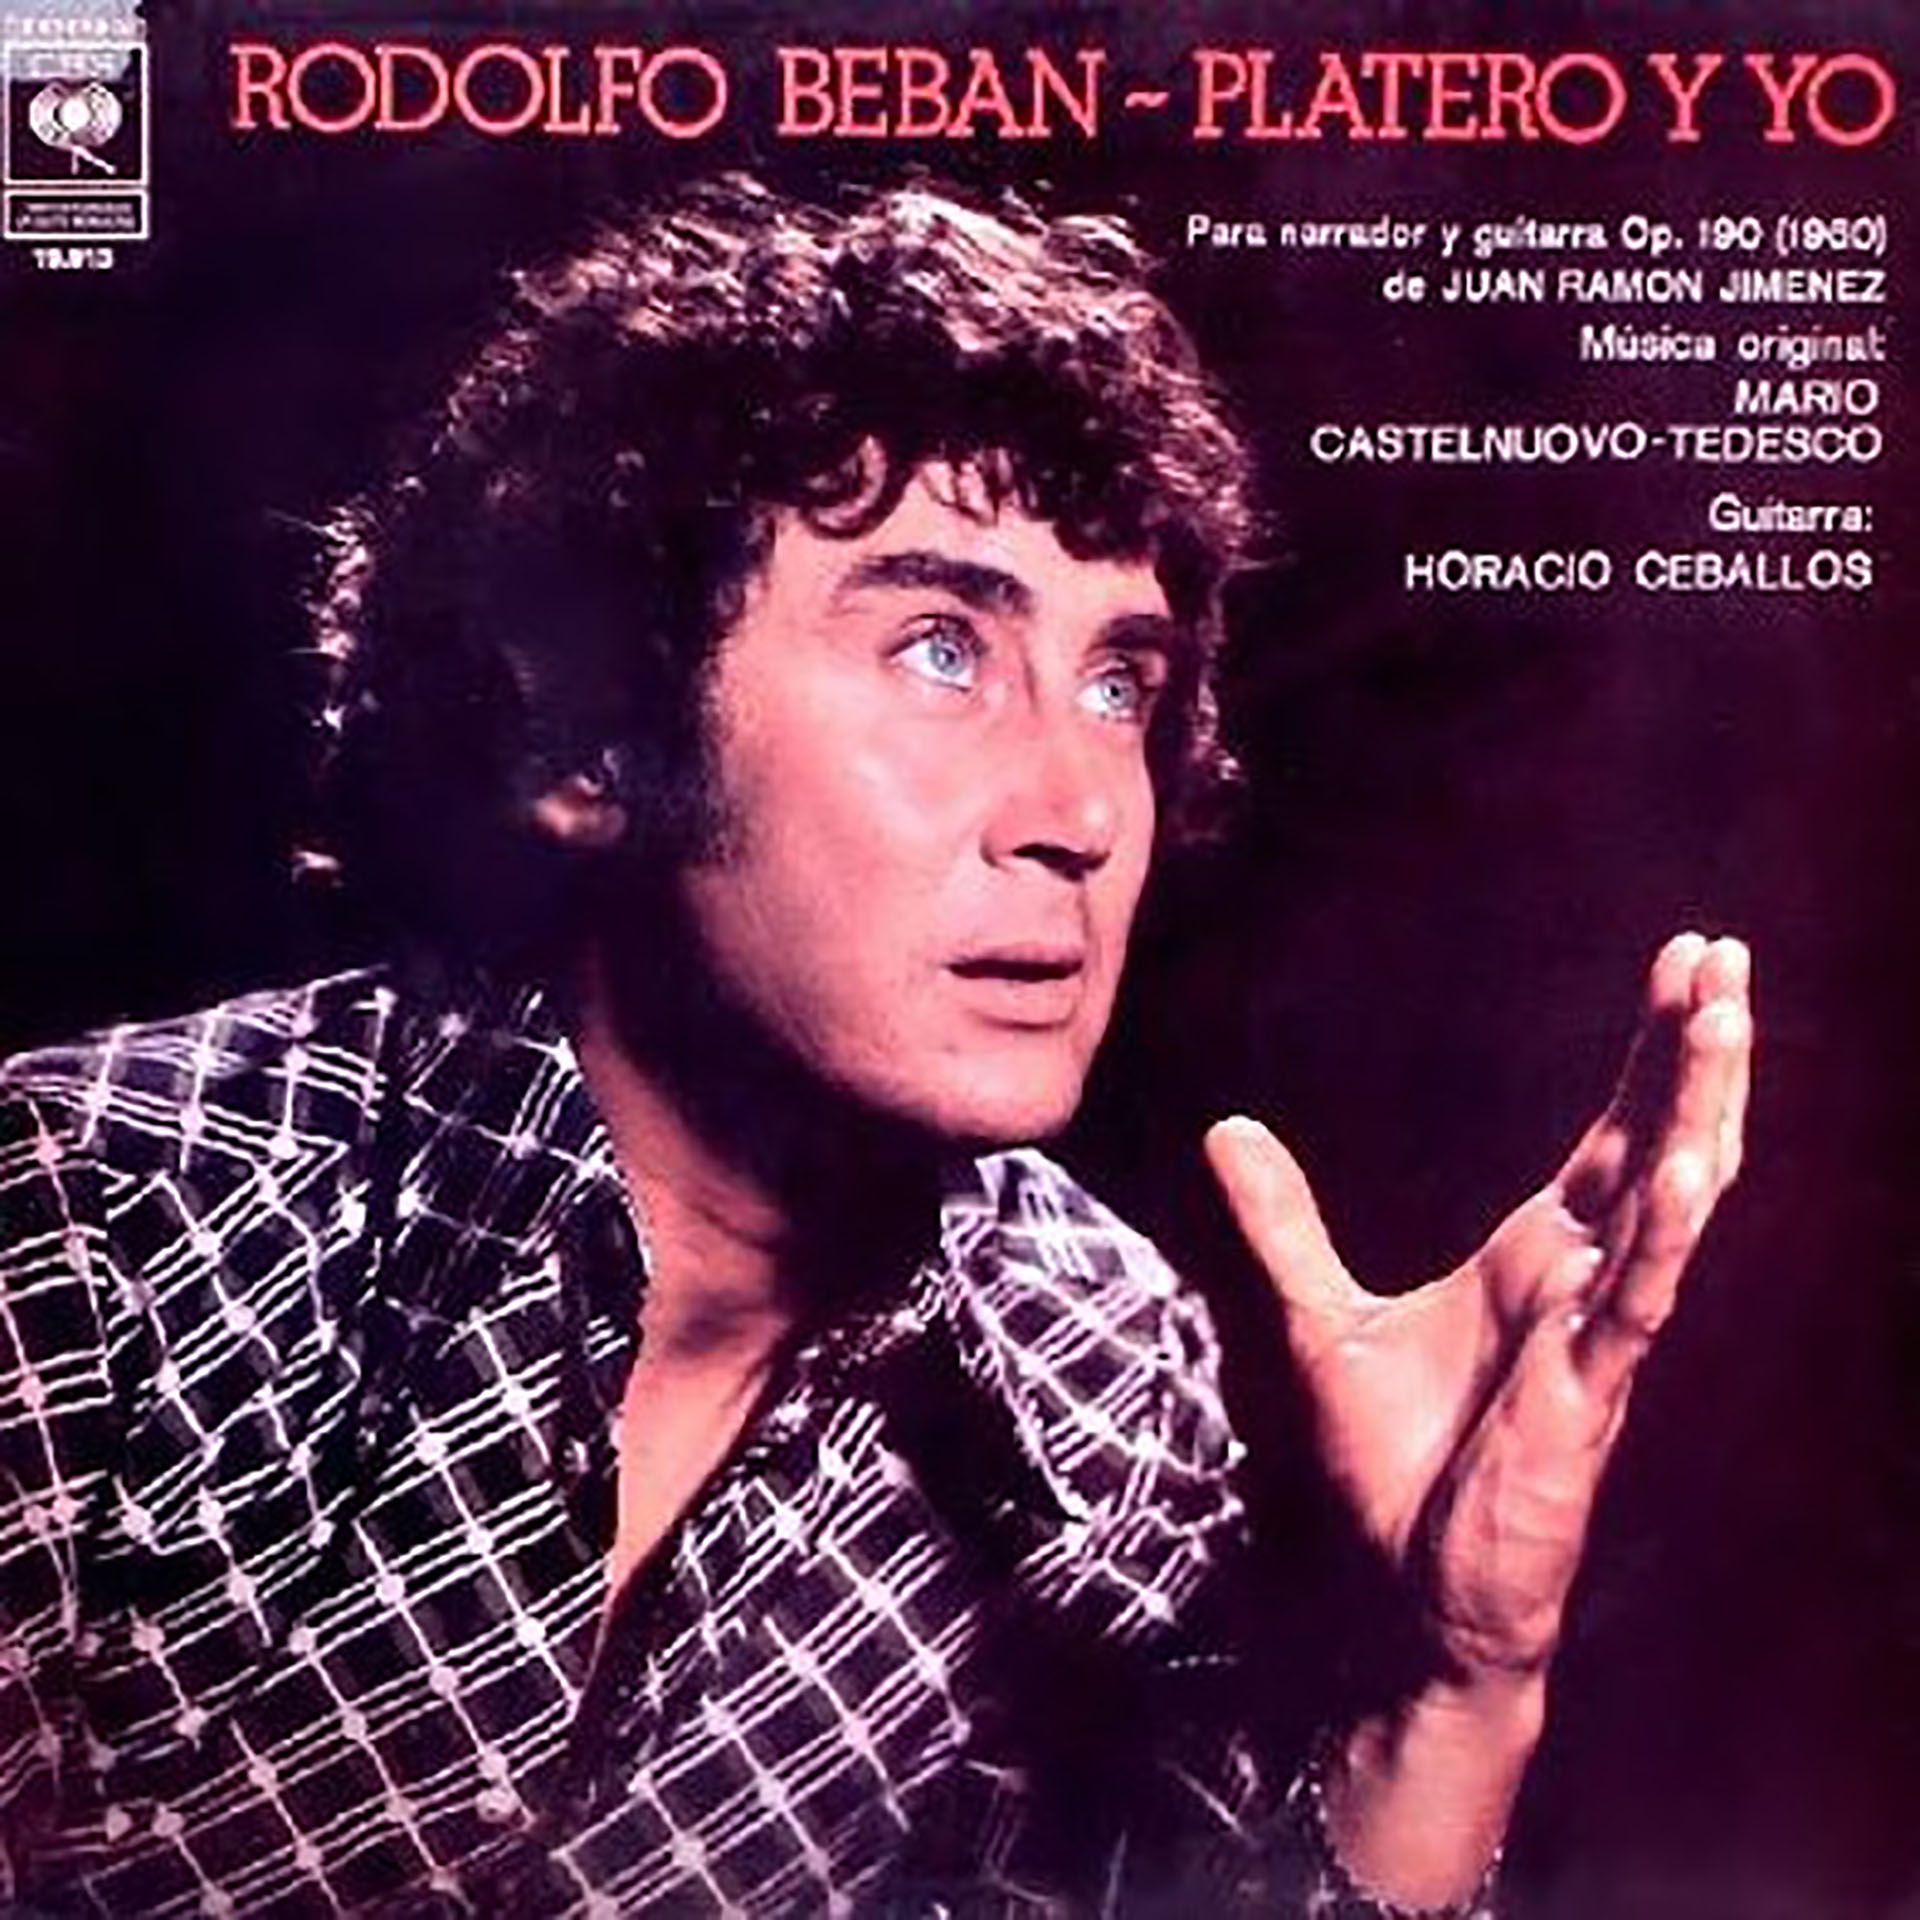 Rodolfo Bebán grabó cuatro discos recitando textos